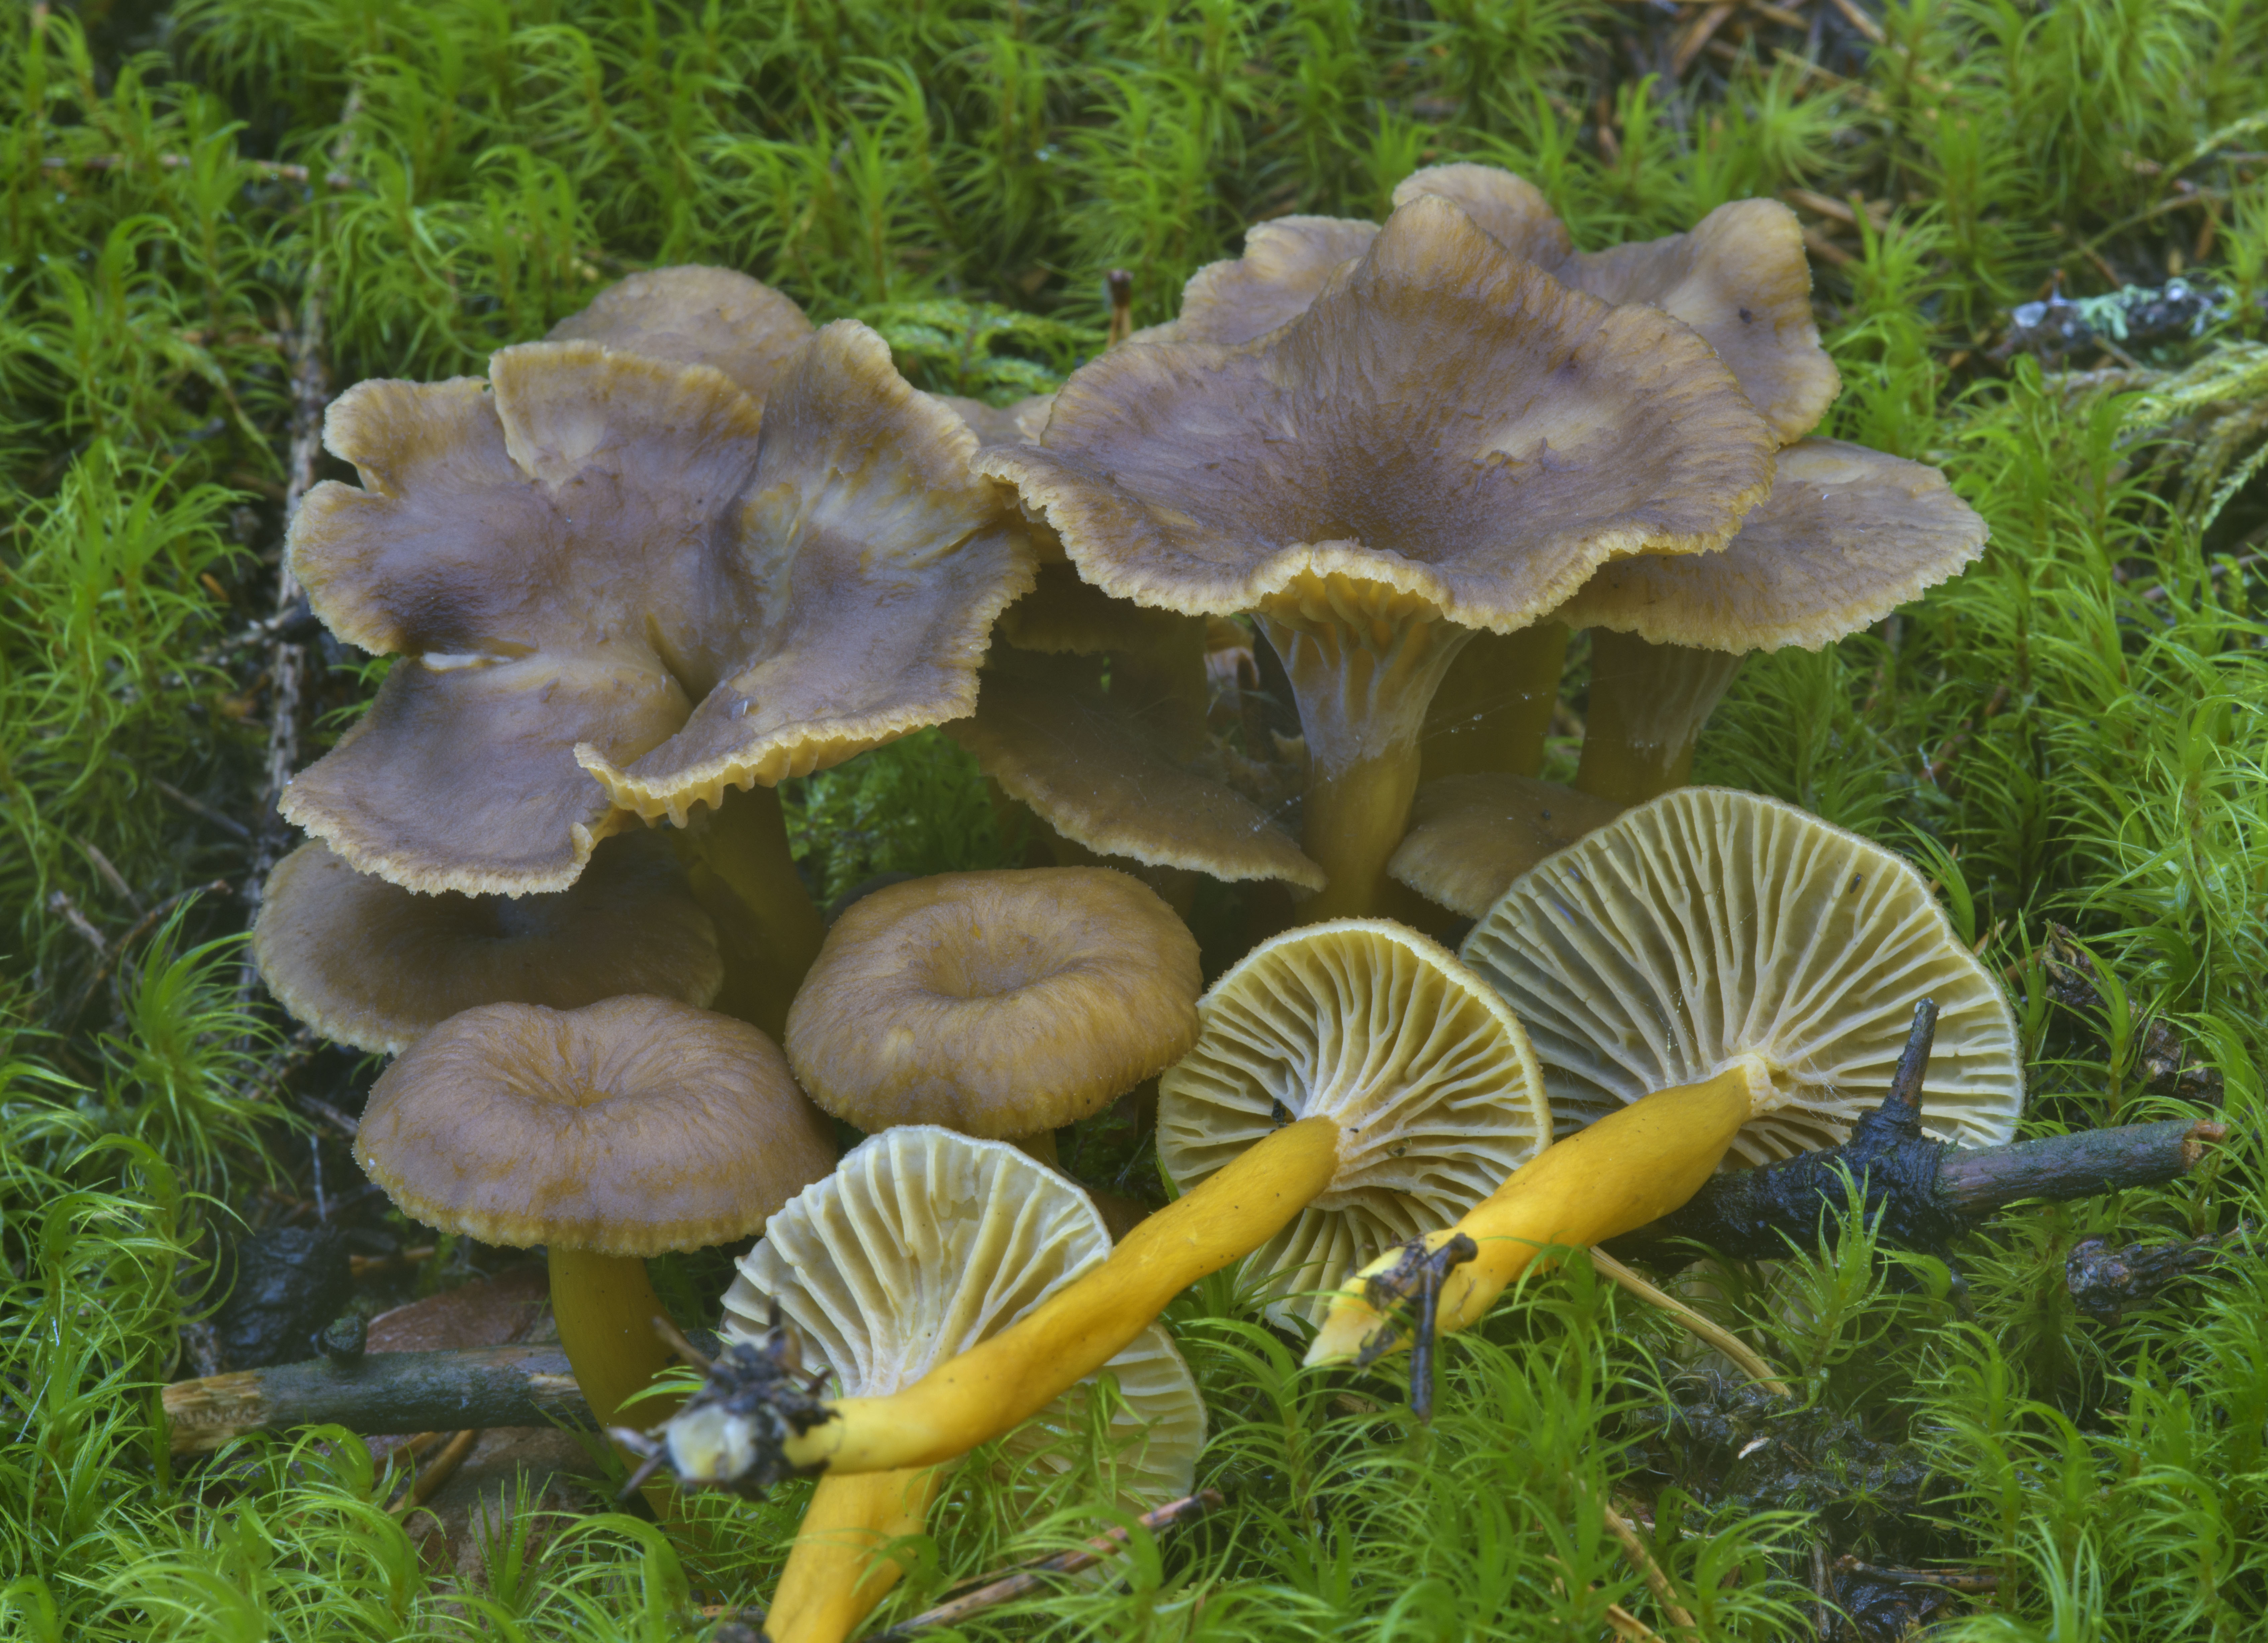 Лисички (грибы) – описание, виды, где растут, свойства, фото.